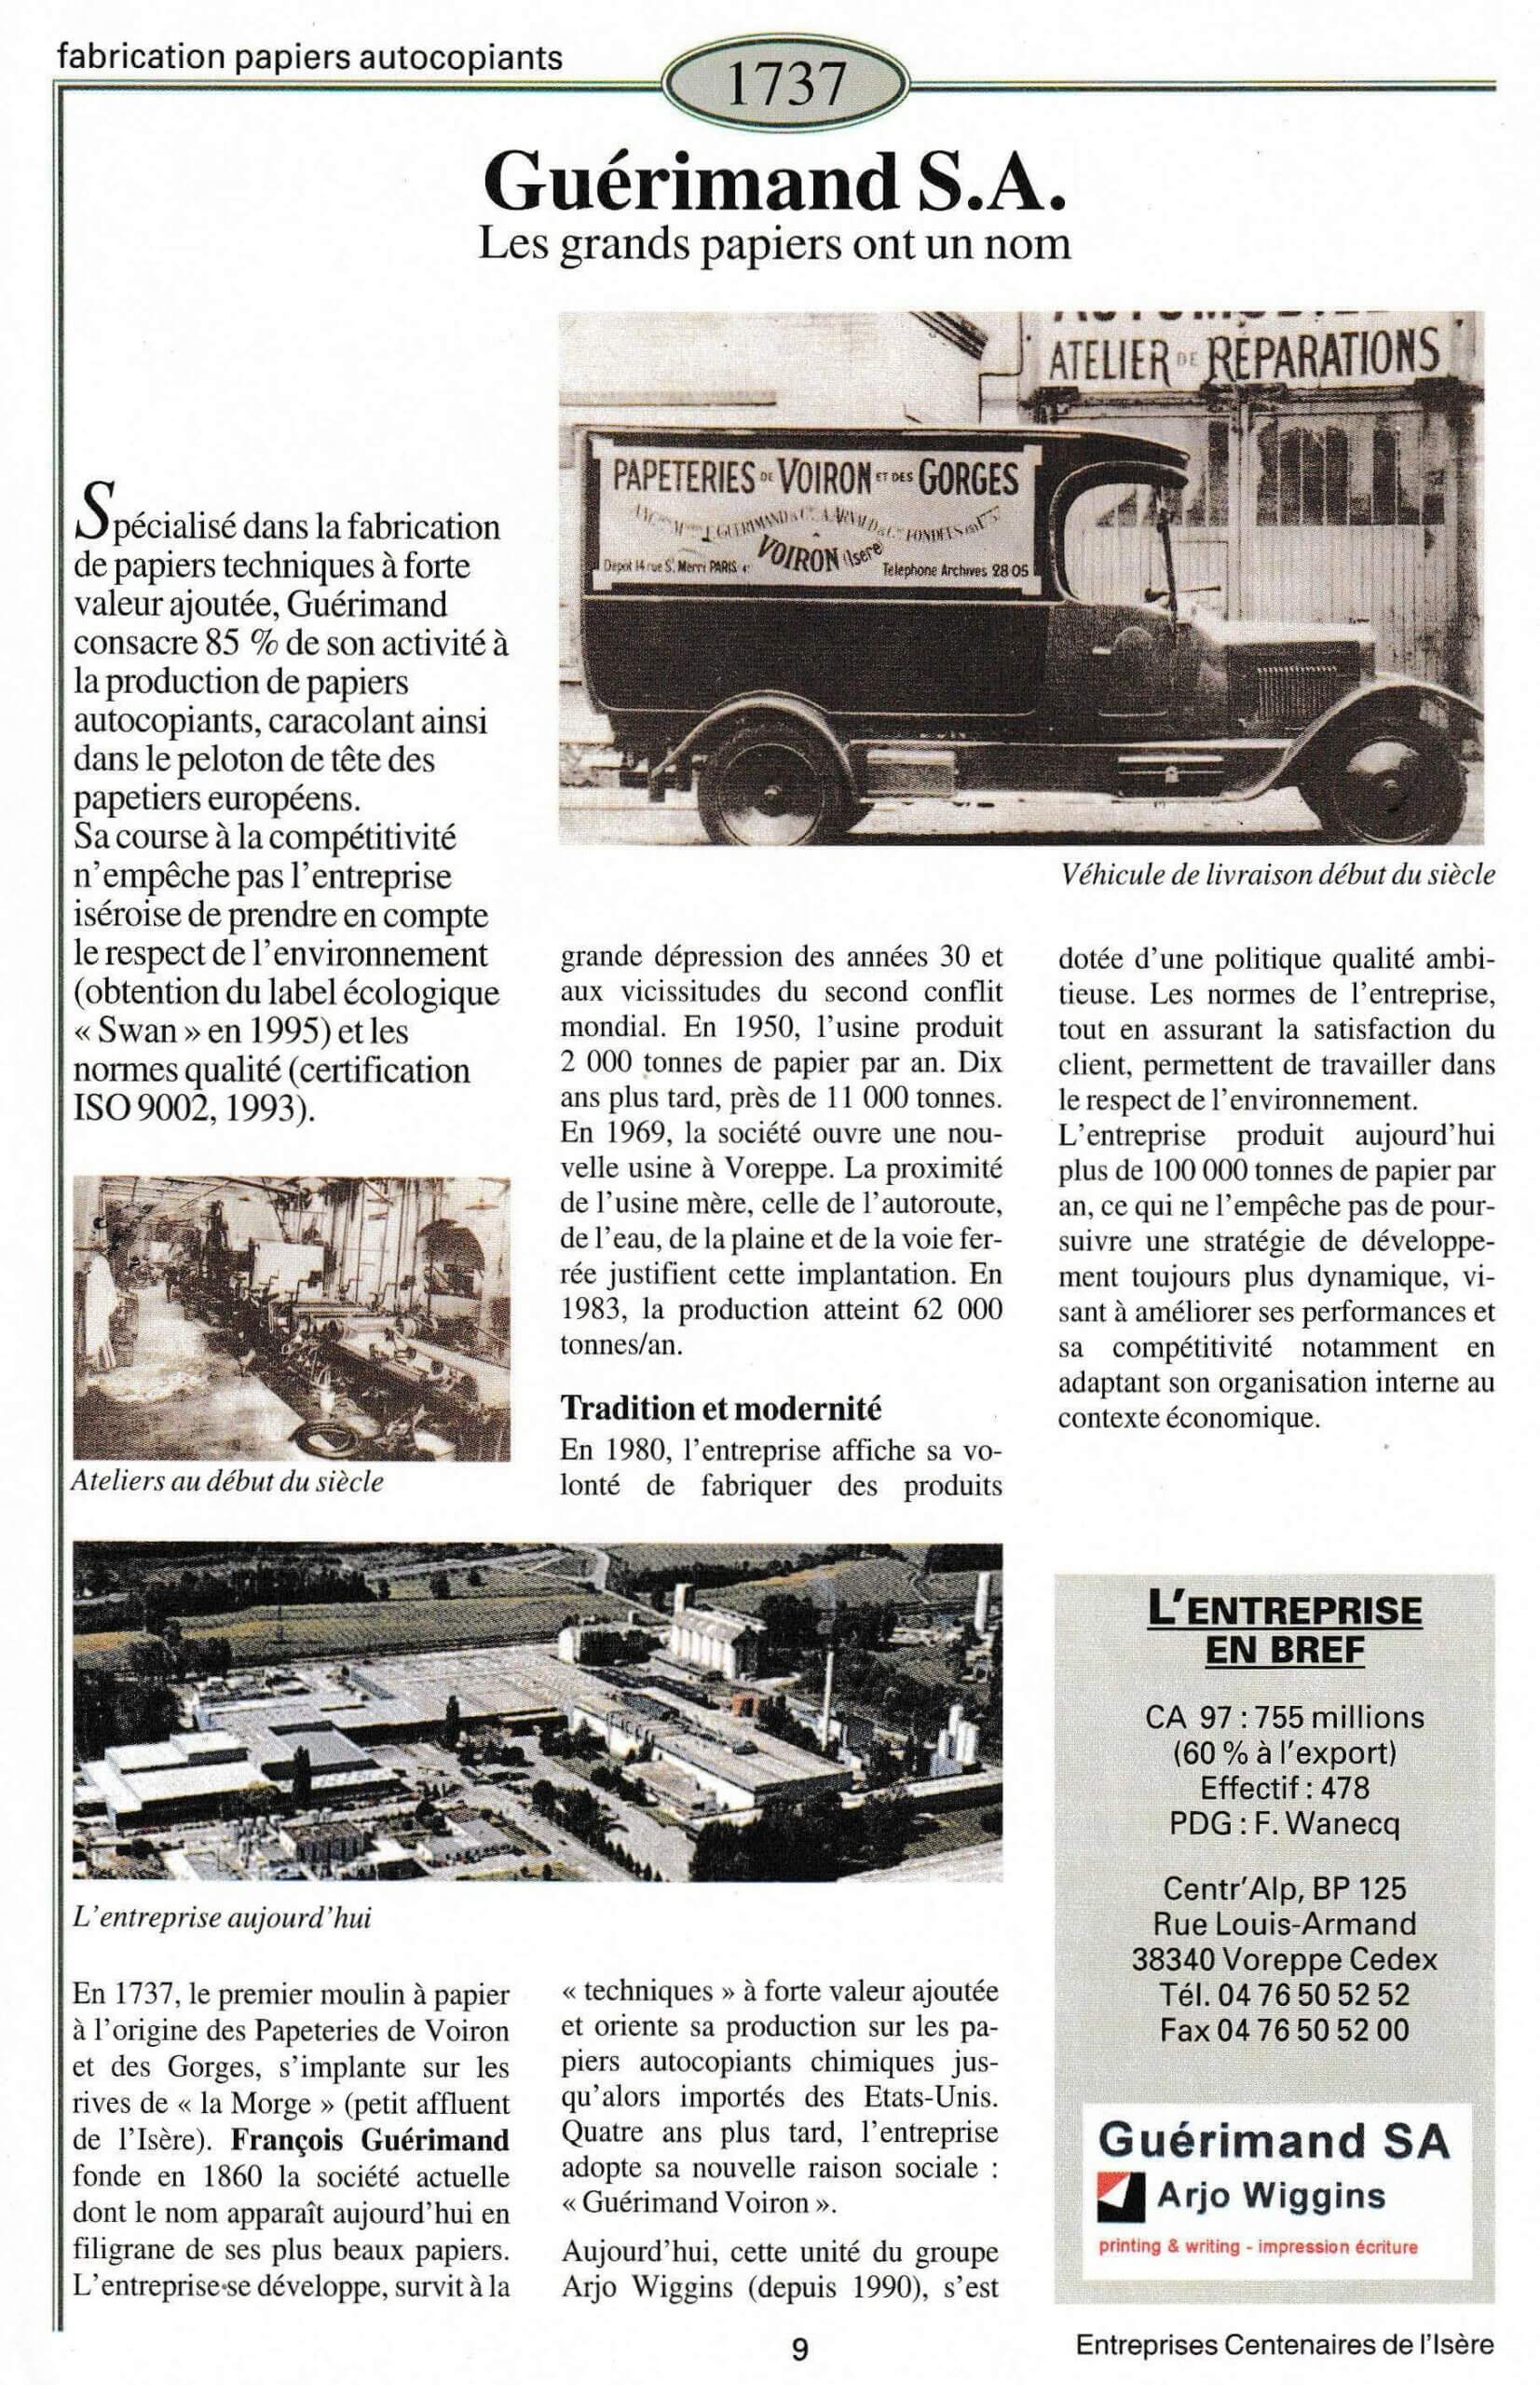 Guérimand - fiche du supplément "Entreprises centenaires en Isère", publié par Les affiches de Grenoble et du Dauphiné, juin 1998.